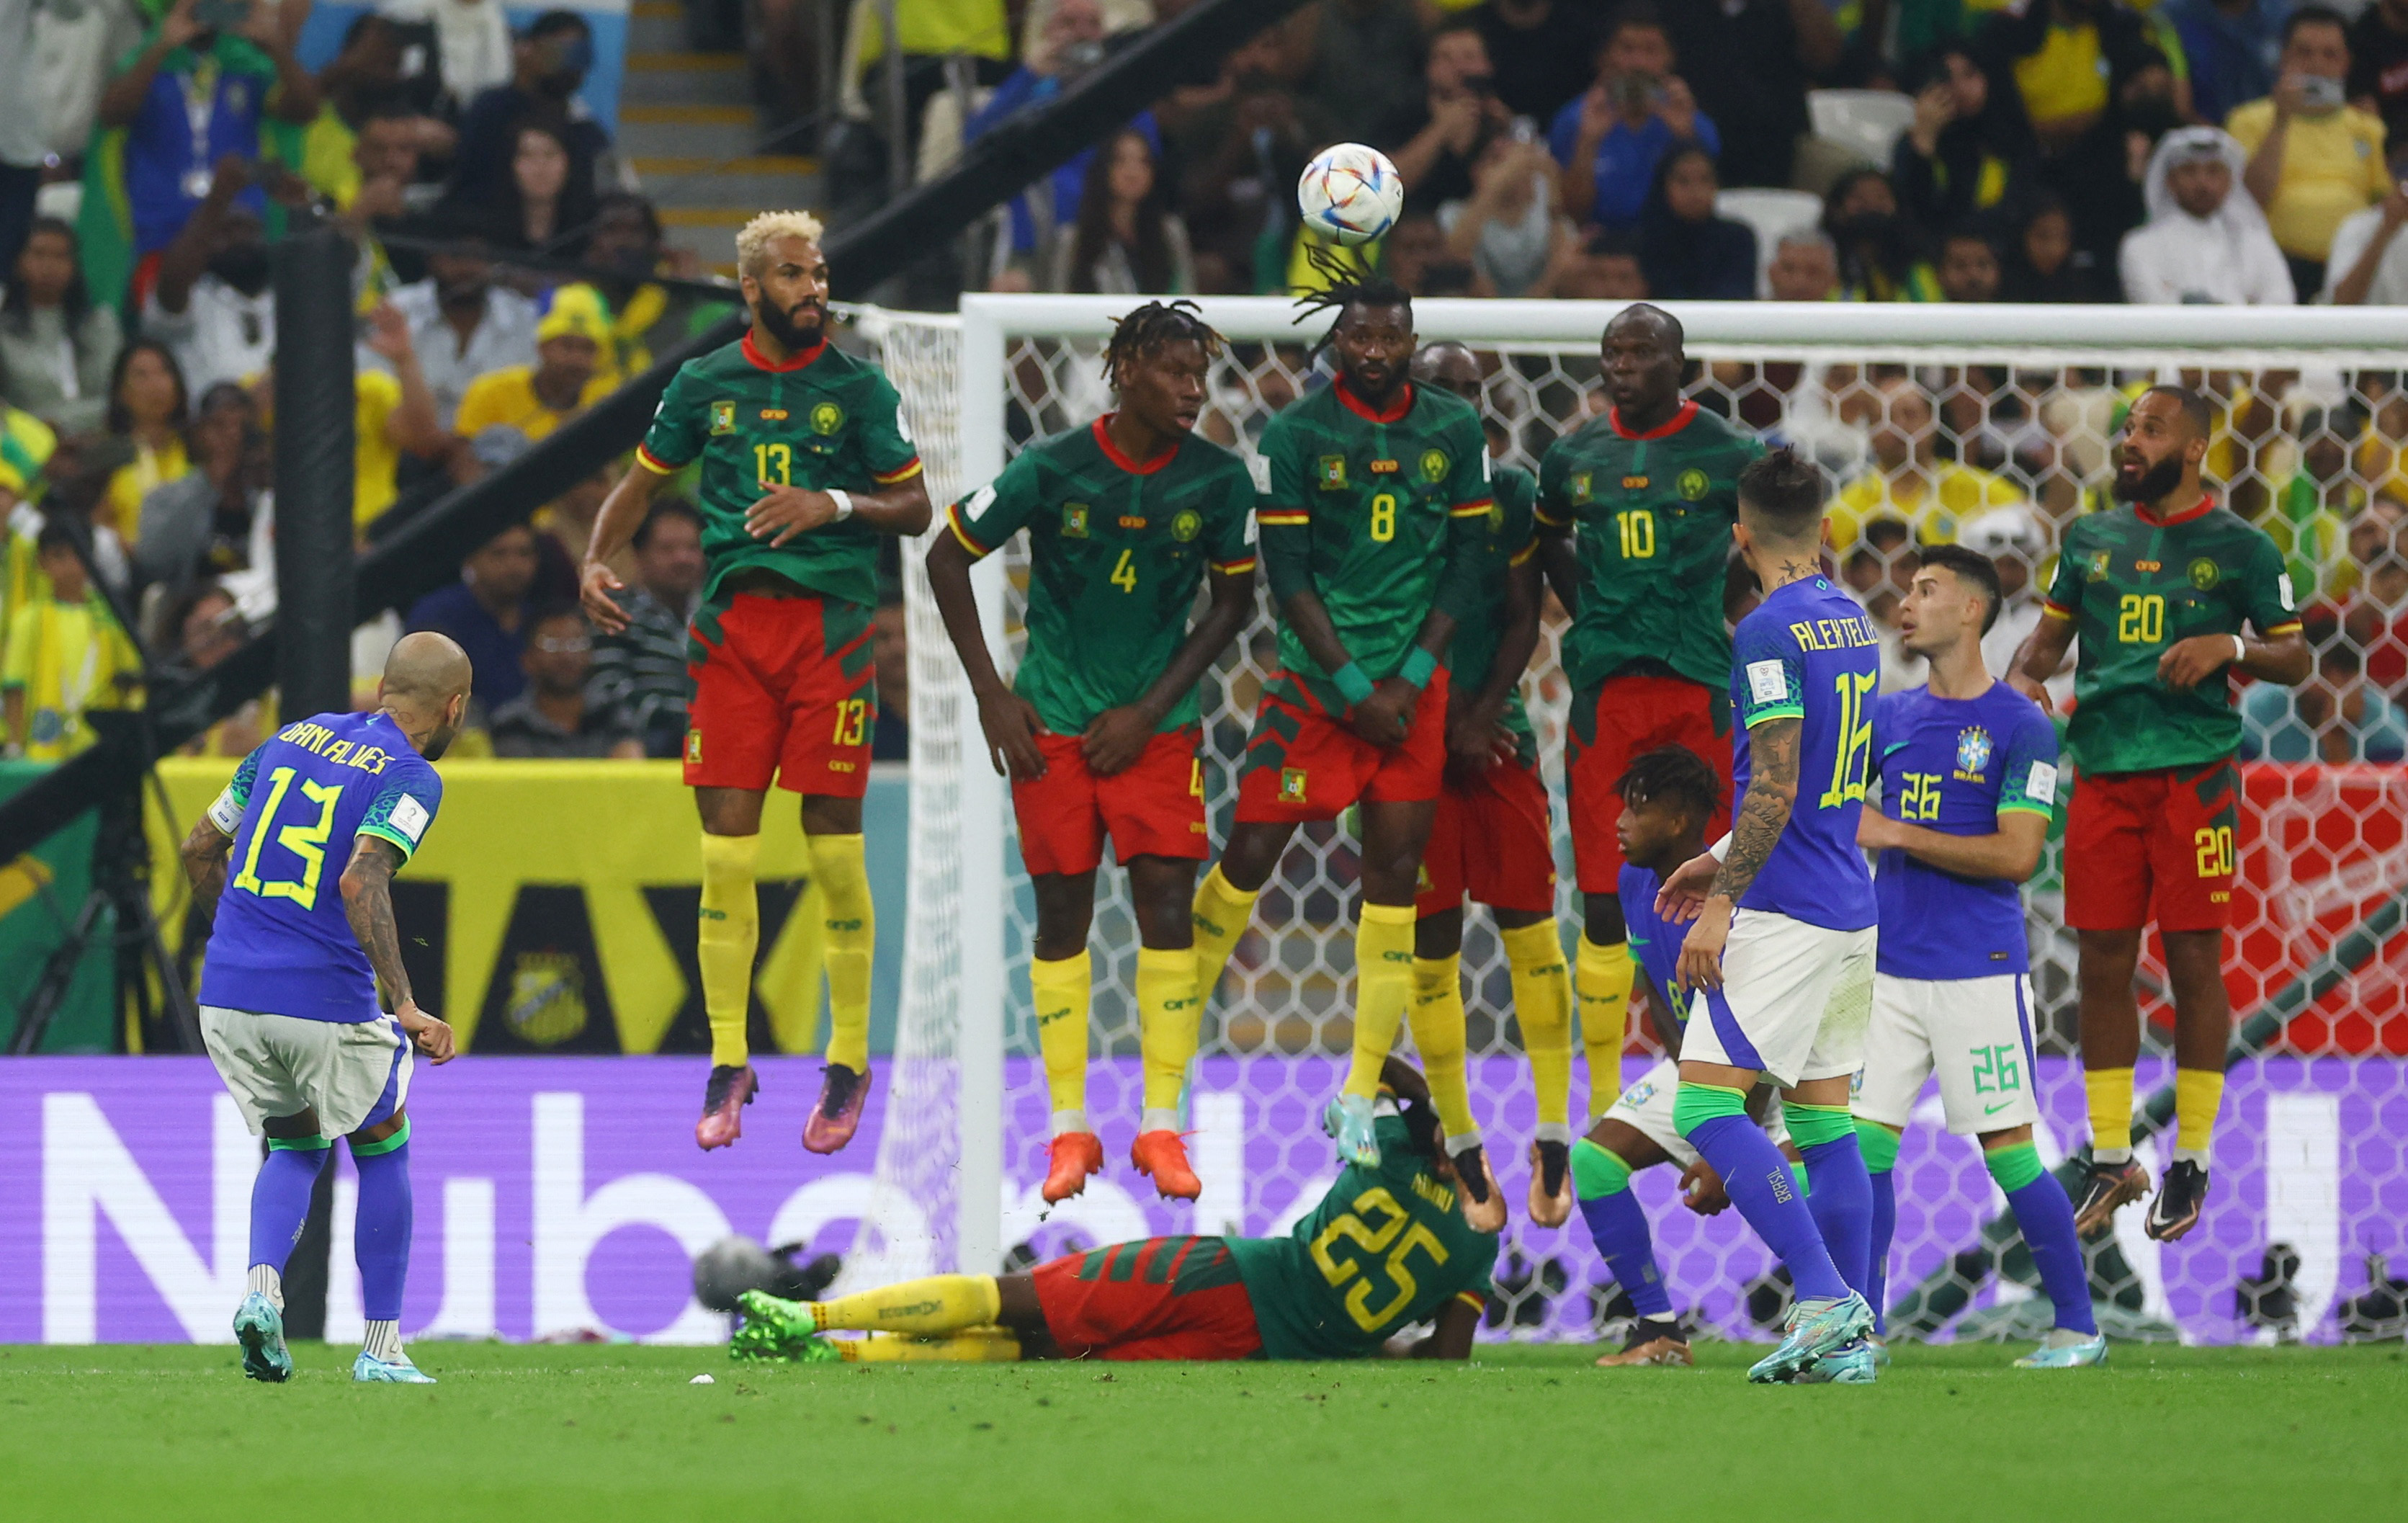 Dani Alves patea el tiro libre para Brasil que se fue por encima del travesaño (REUTERS/Paul Childs)